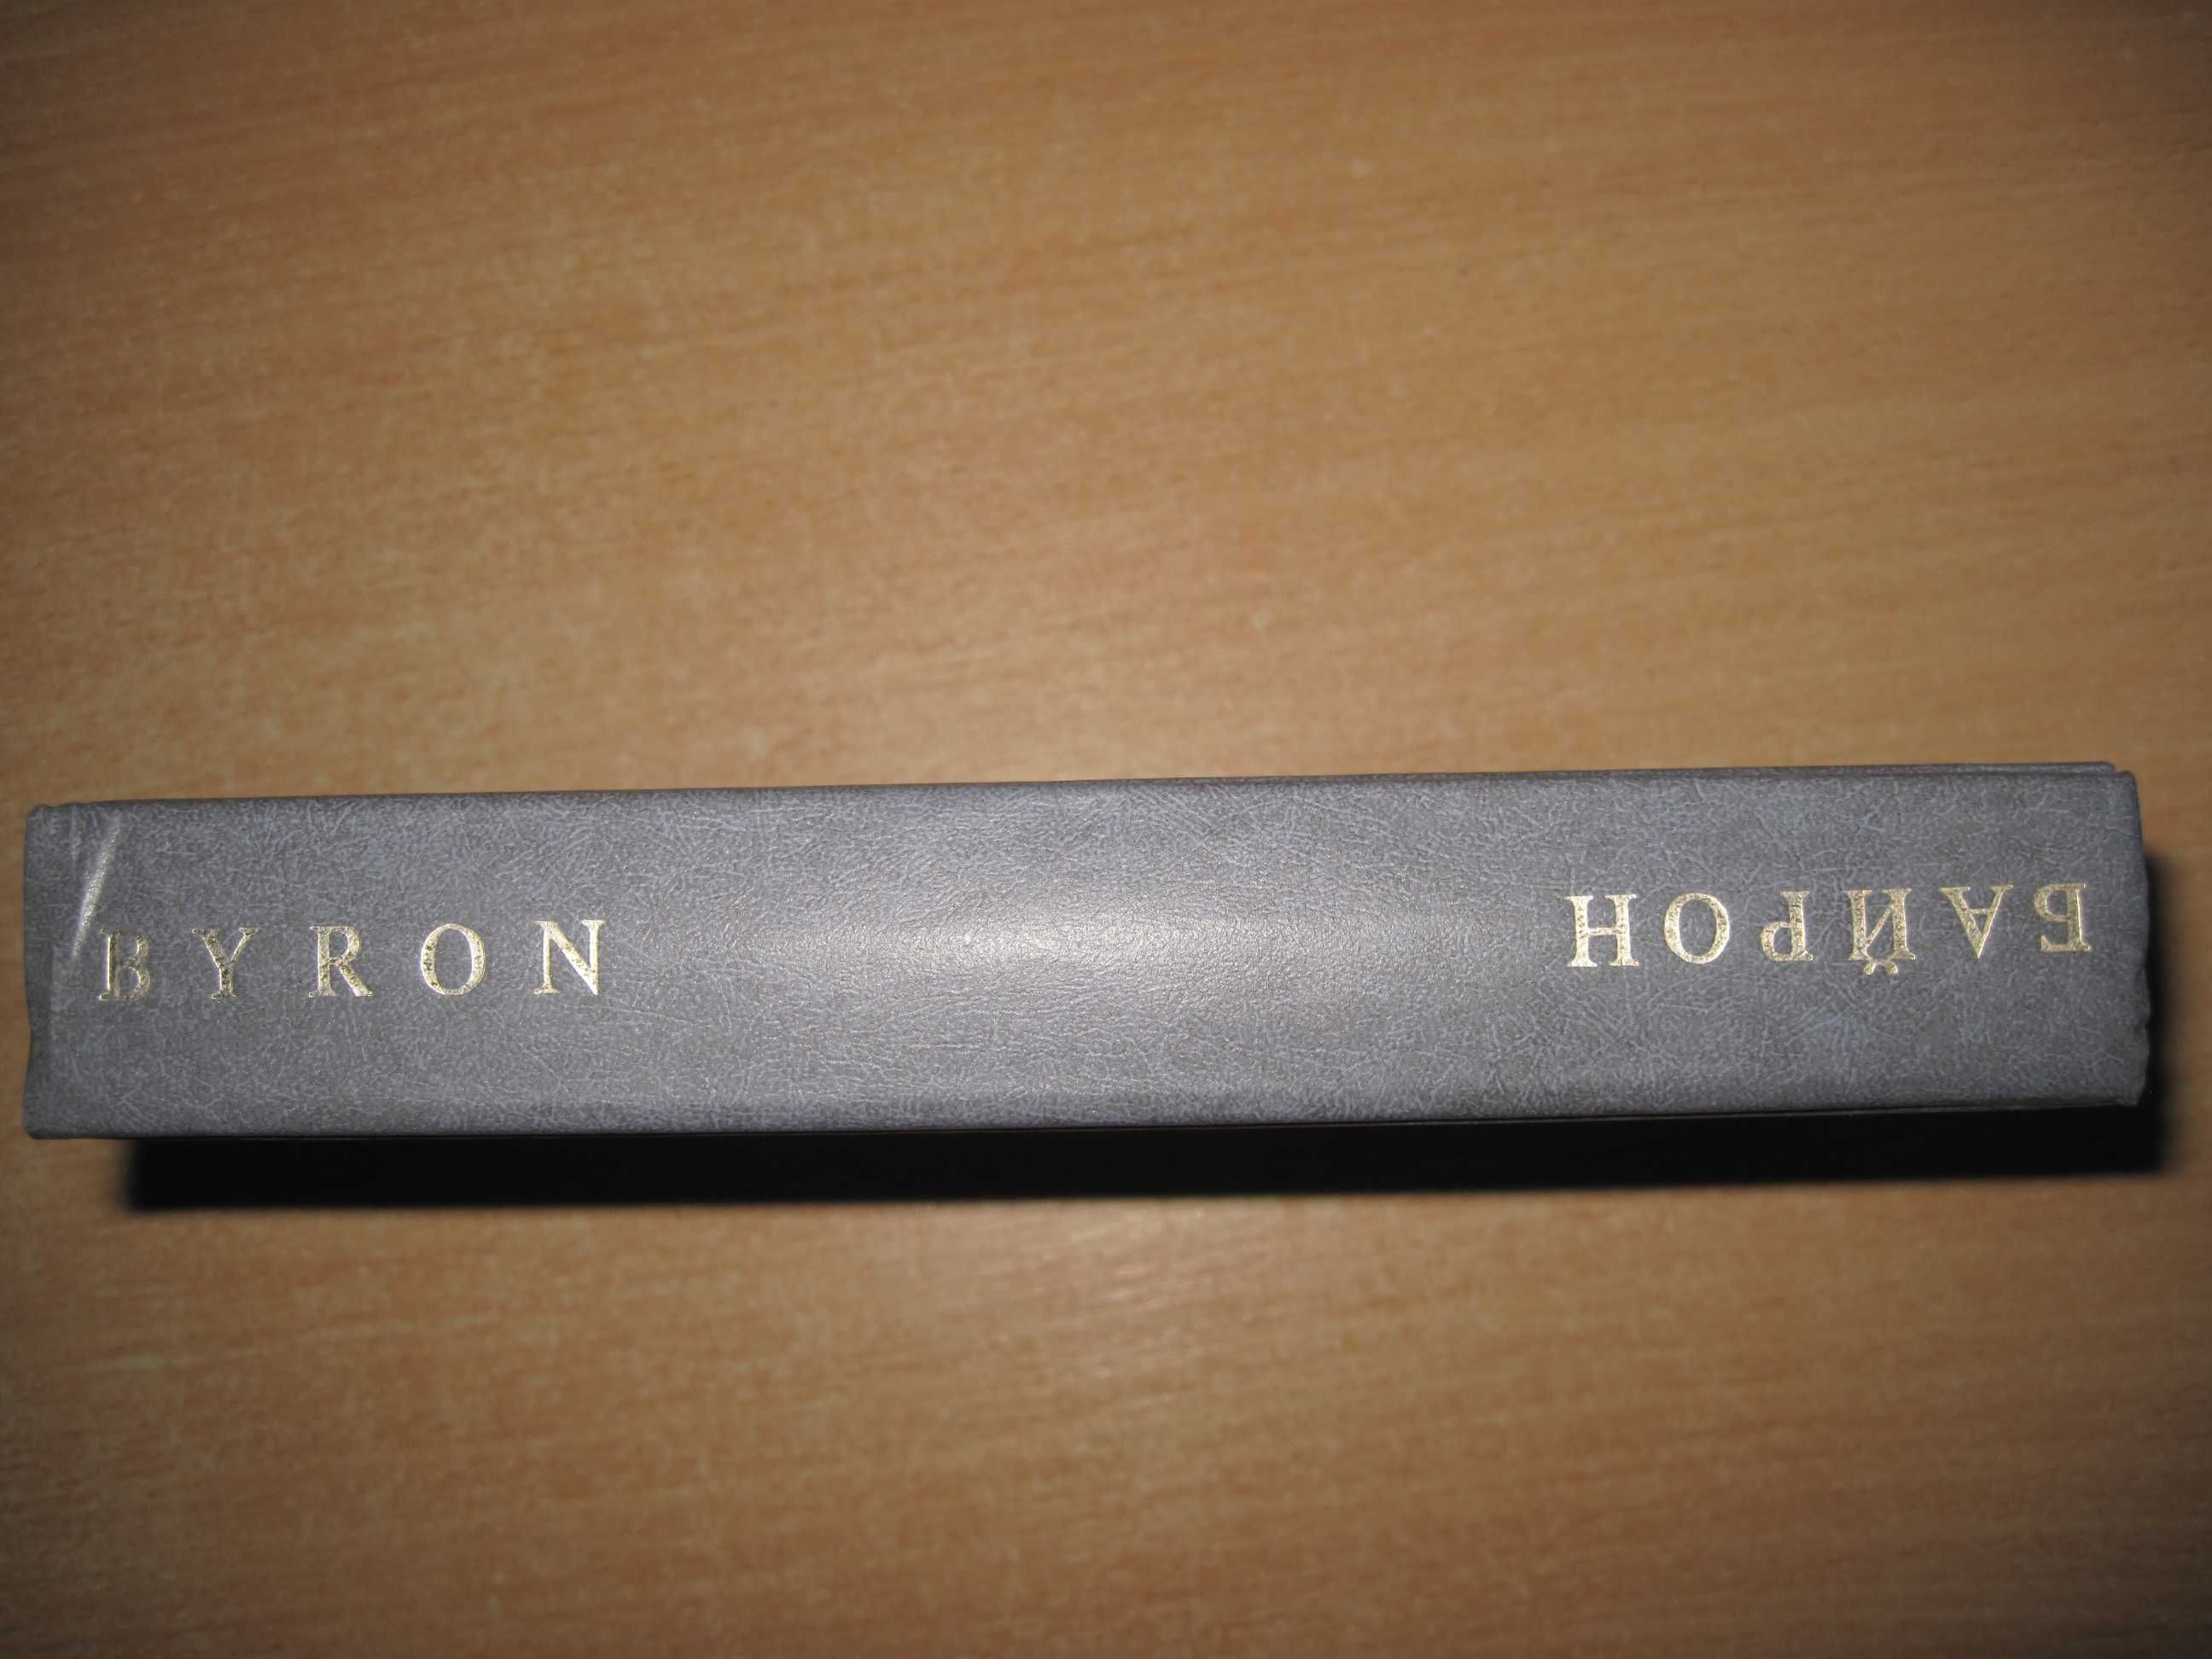 Книга Джордж Байрон (избранная лирика) на англ. и русском, 1988